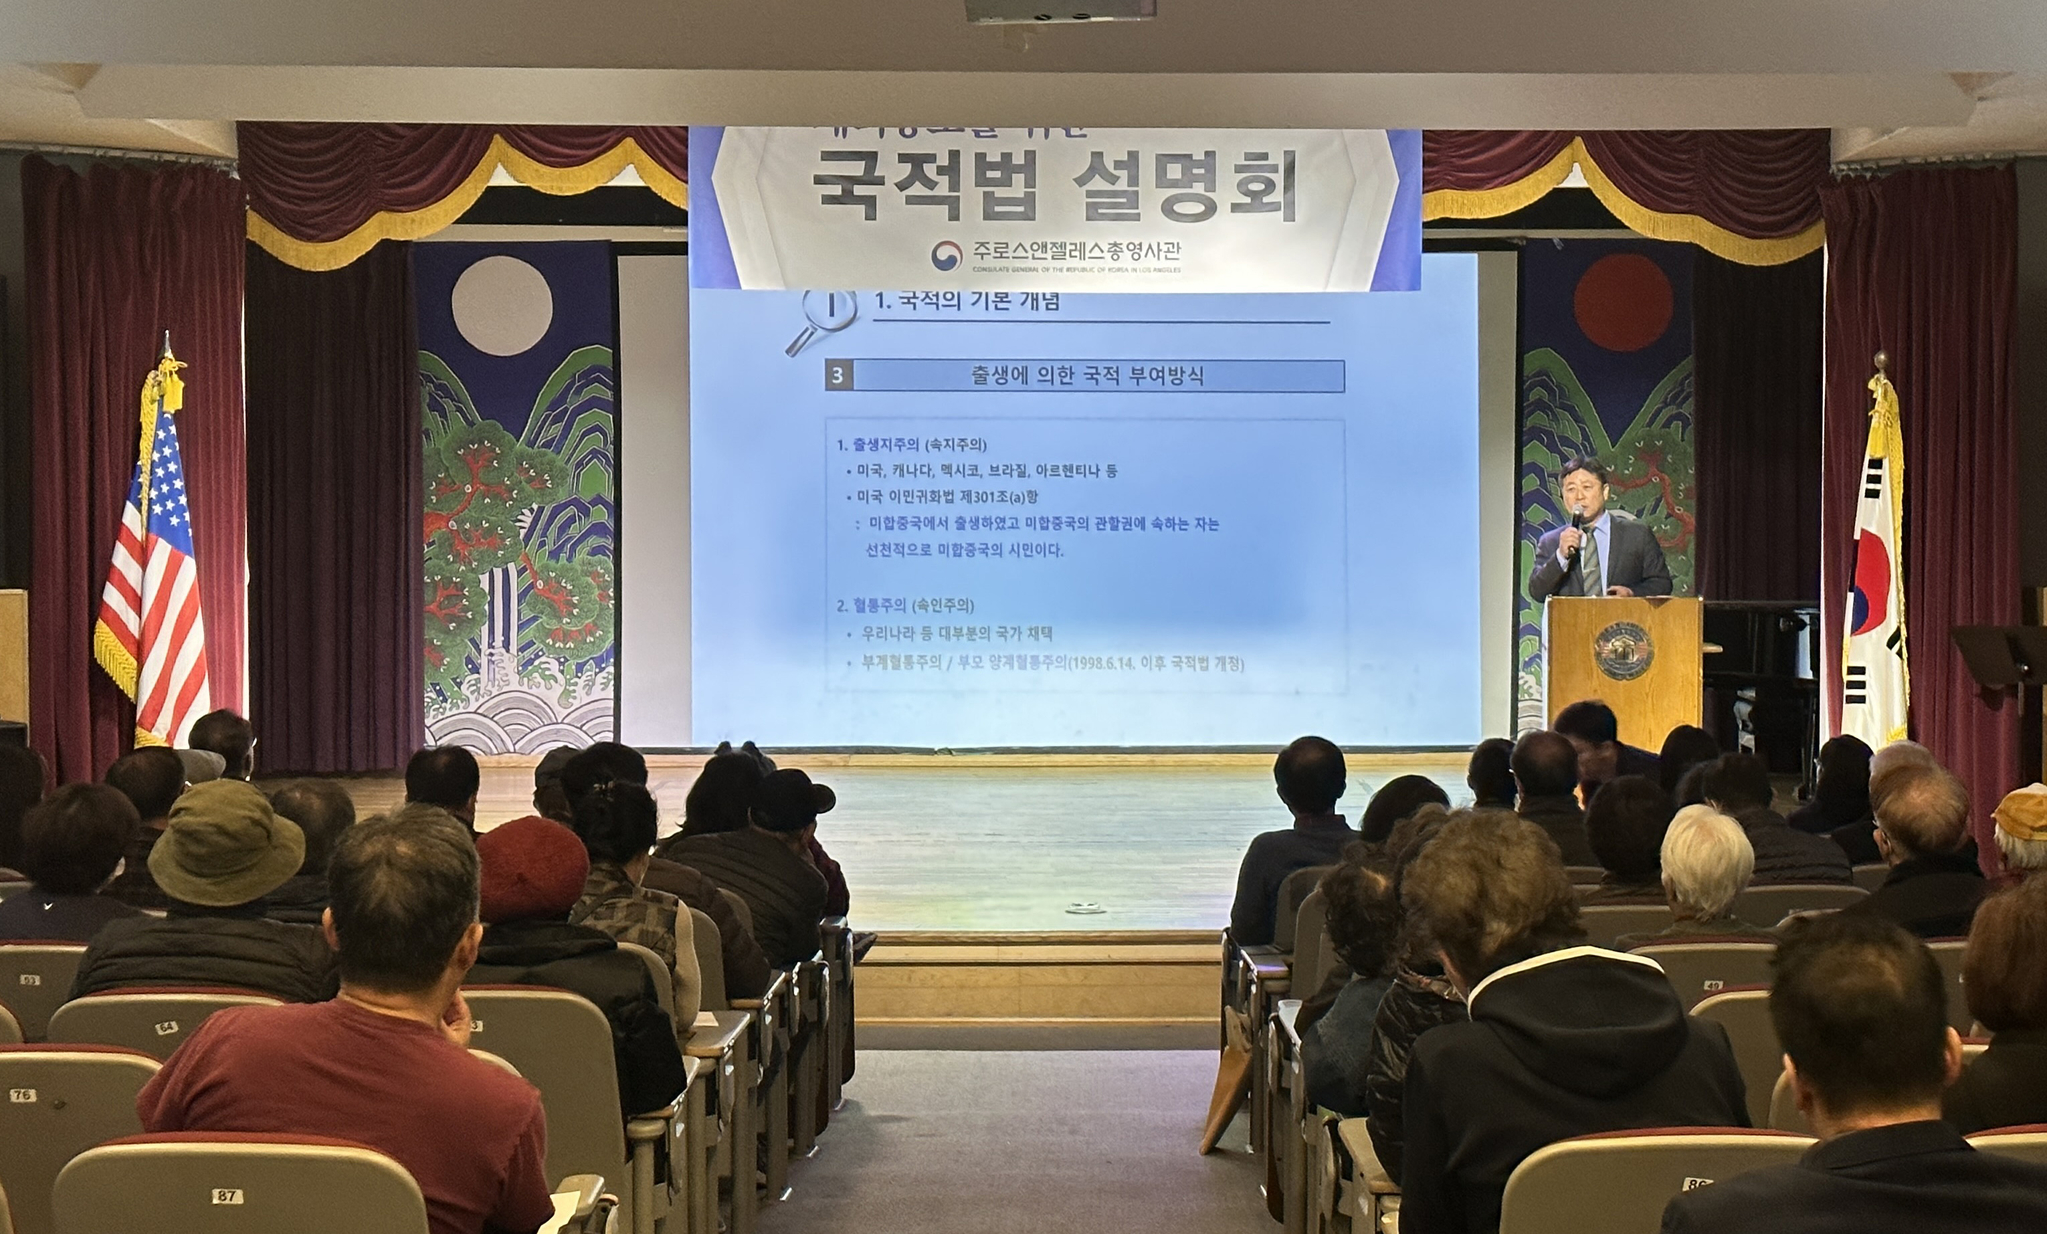 22일 LA한국교육원 강당에서 열린 한국 국적법 설명회에서 이상수 법무영사가 관련 법에 대해 설명하고 있다.  김상진 기자